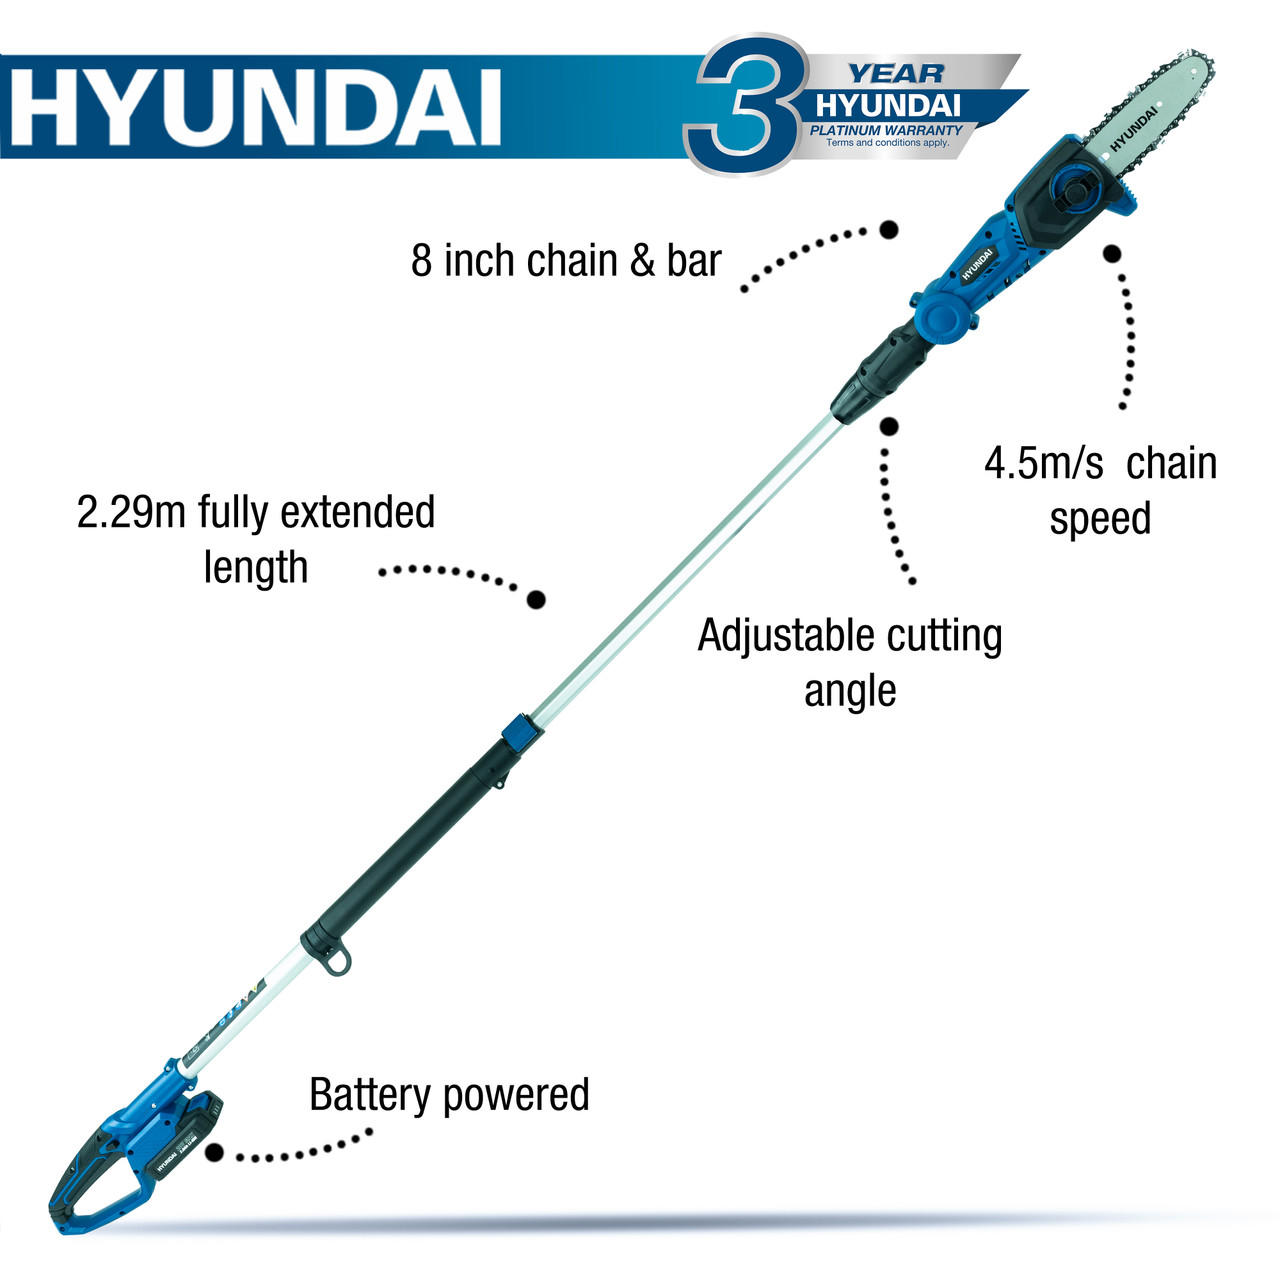 Hyundai HY2192 20V Cordless Pole Saw Pruner Kit